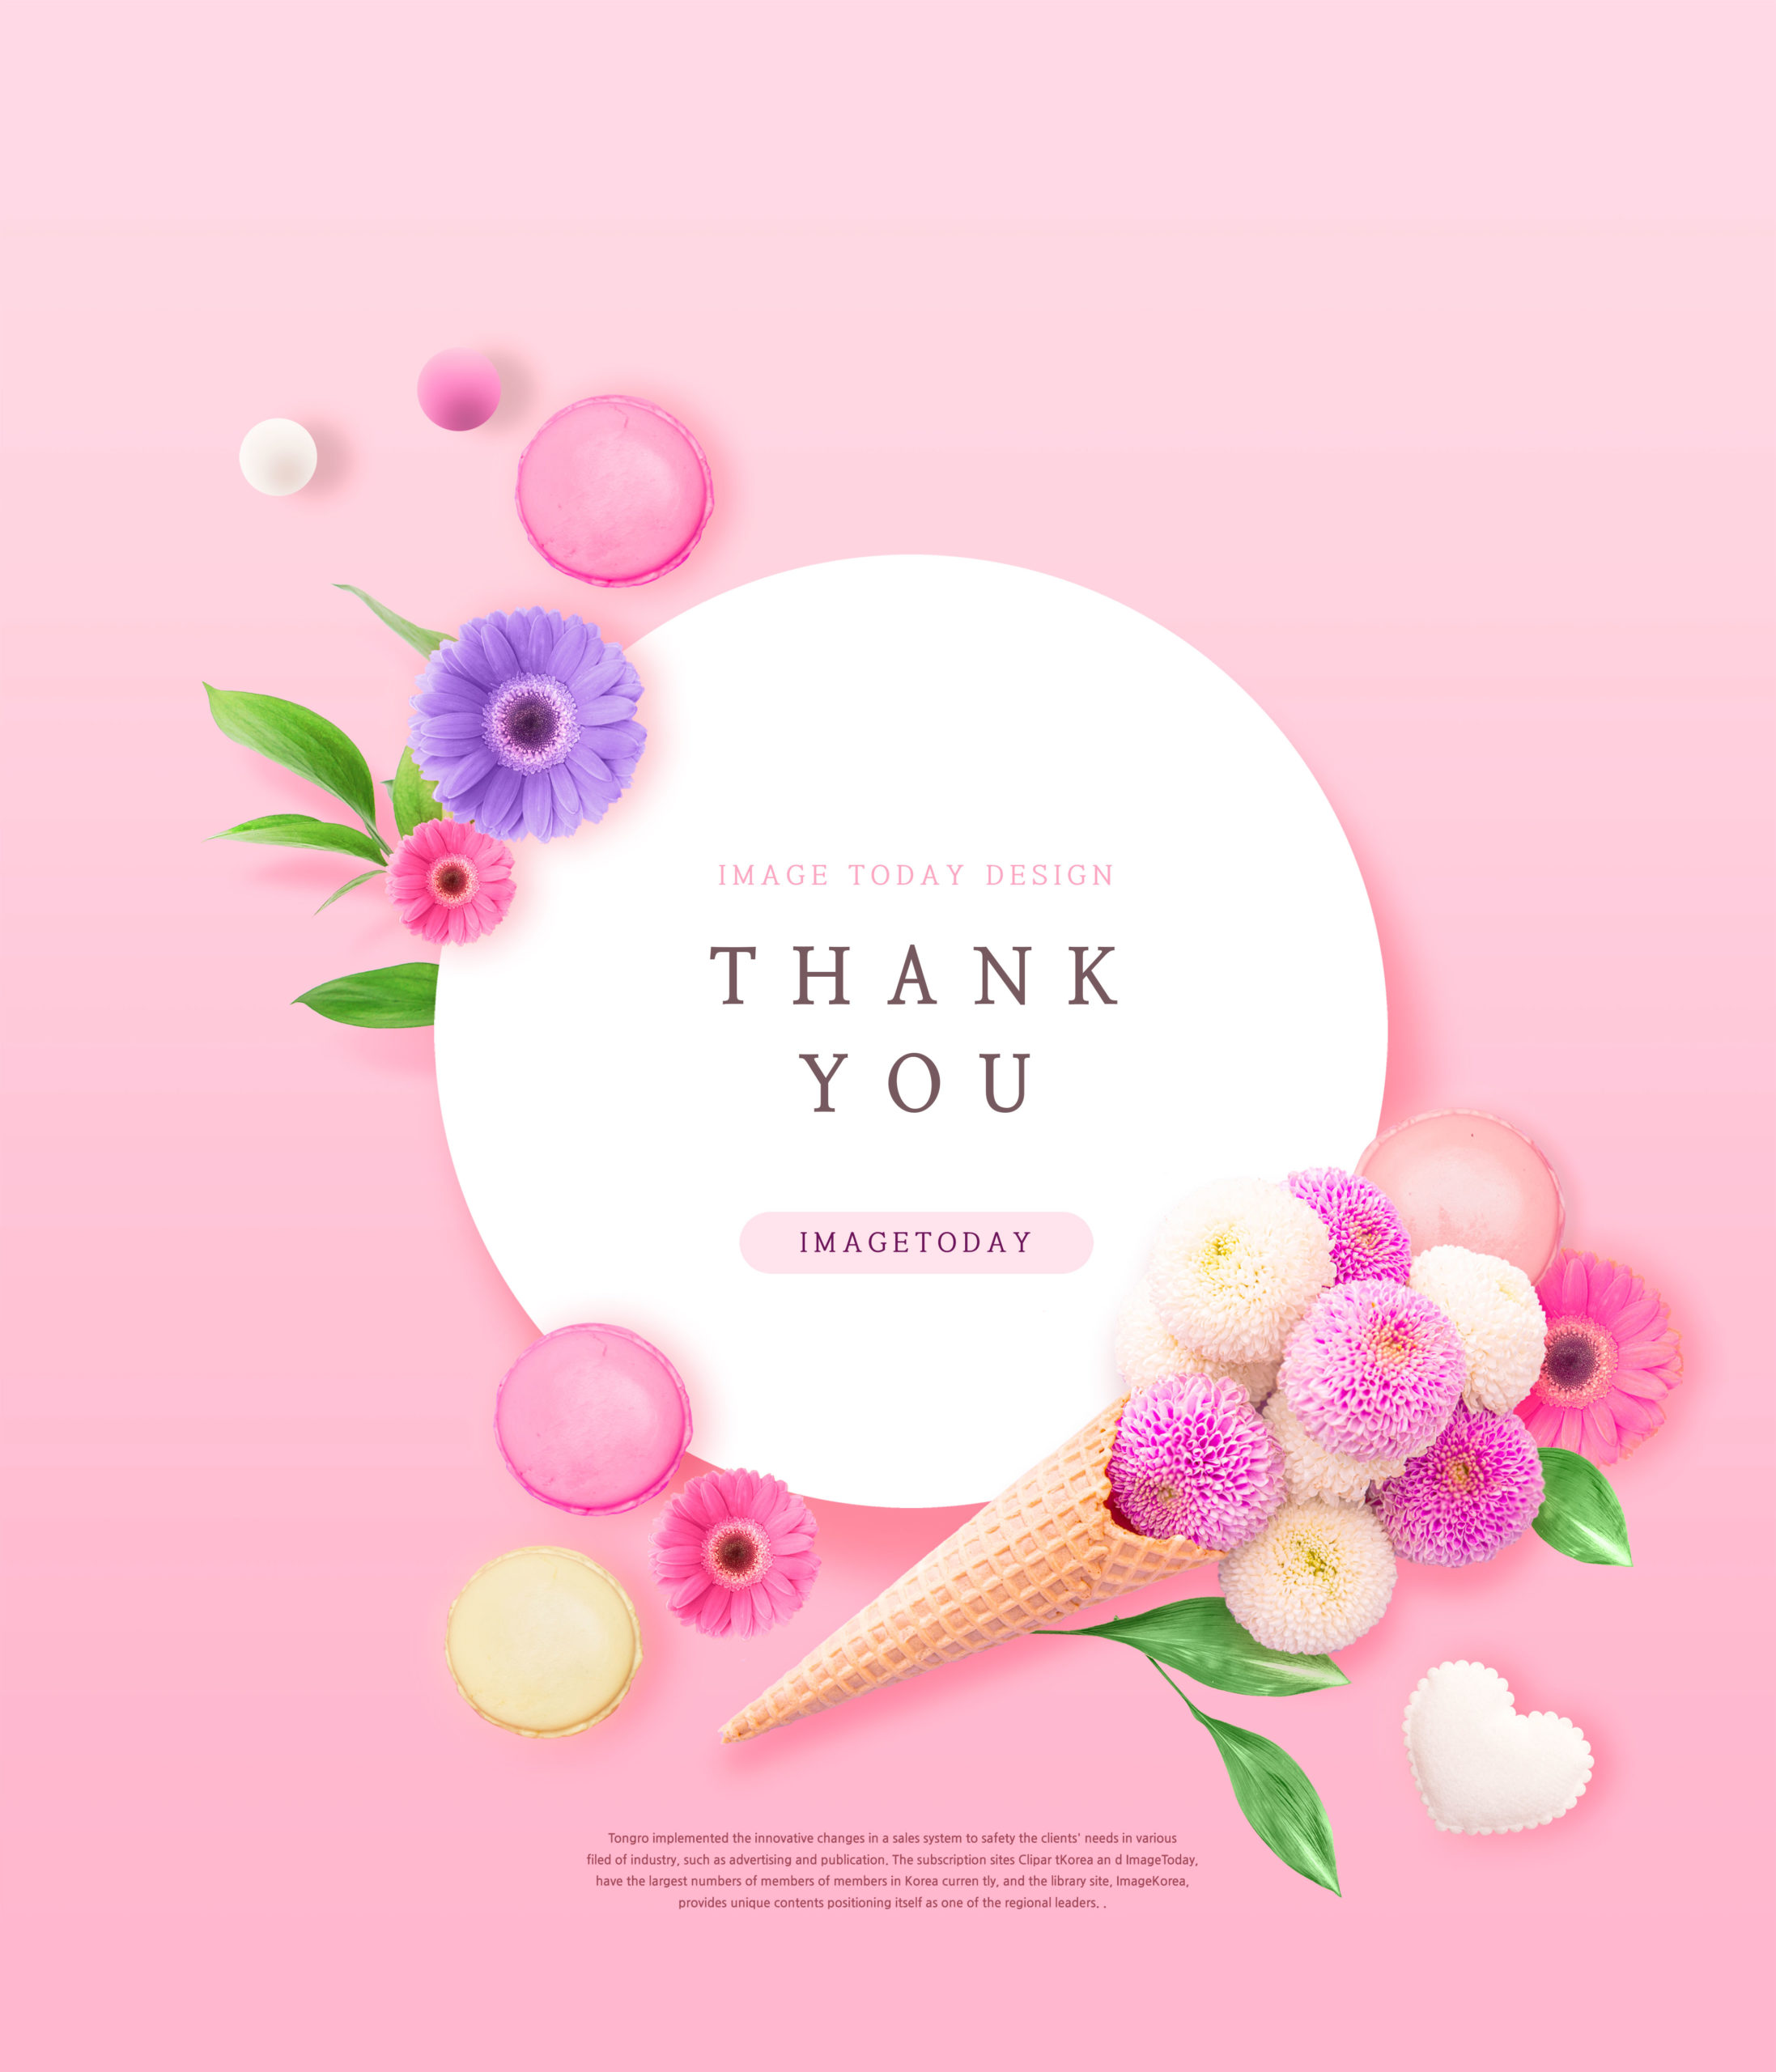 粉色主题三八女神节贺卡/海报PSD素材蚂蚁素材精选模板插图